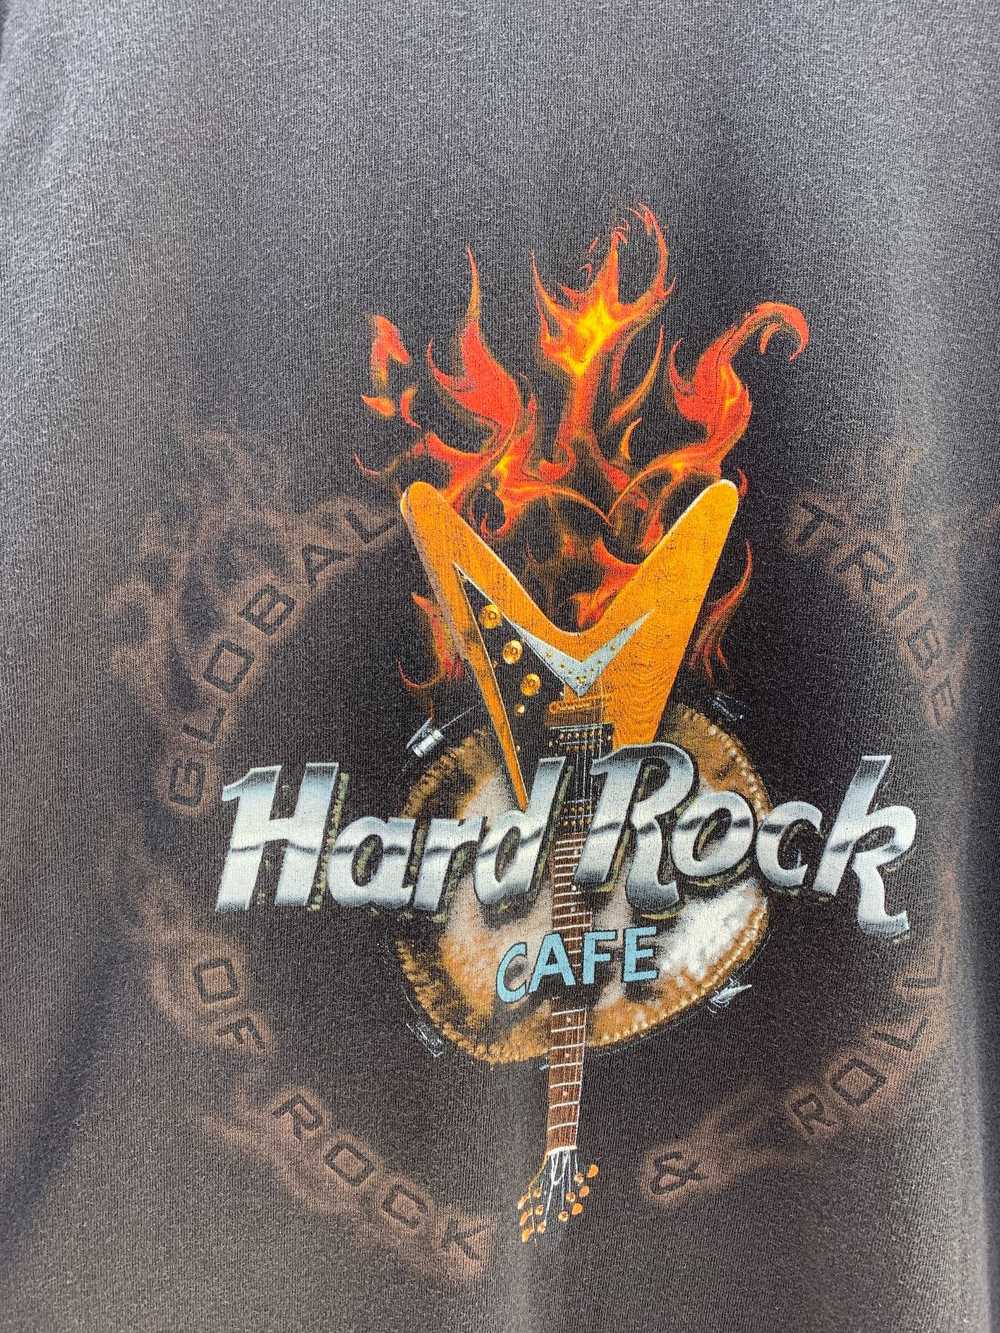 HARD ROCK CAFE ORLANDO GRAPHIC T-SHIRT - image 5